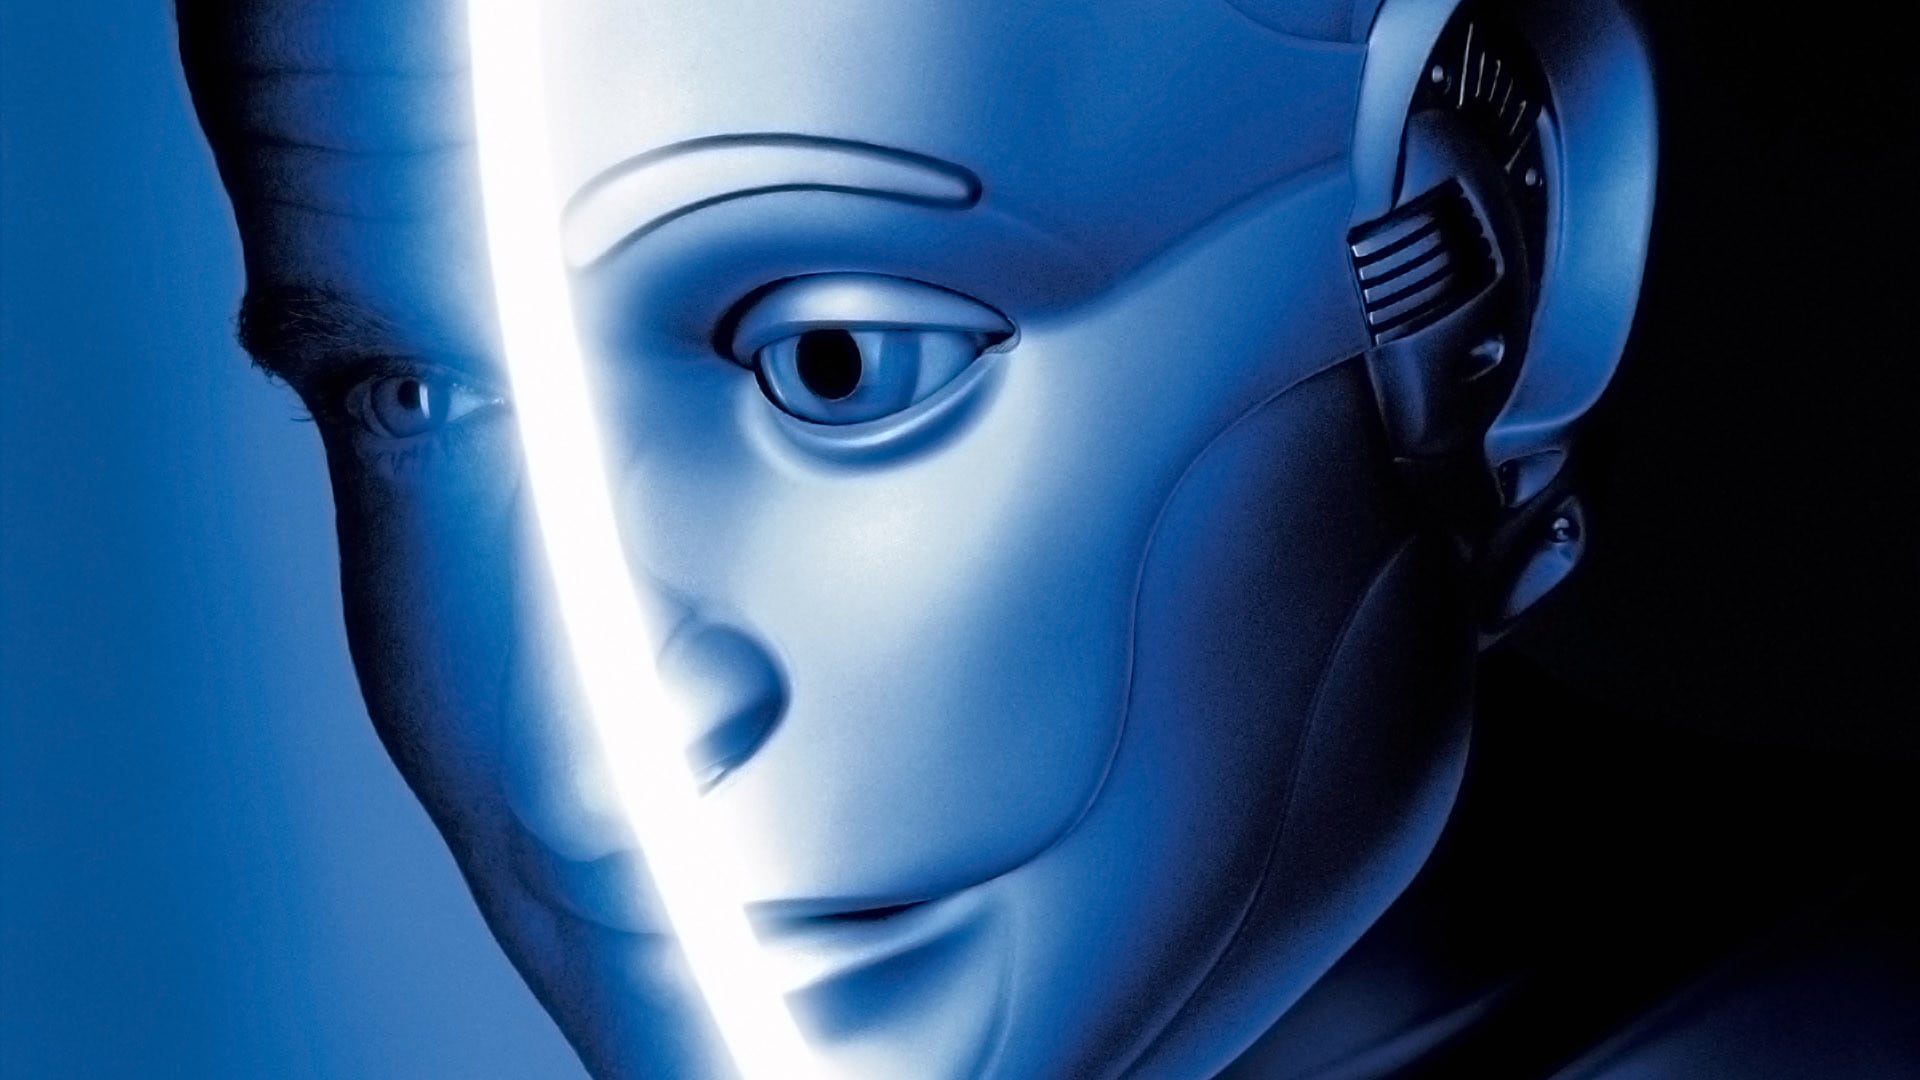 Топ 30 лучших фильмов про роботов и искусственный интеллект. Часть 1